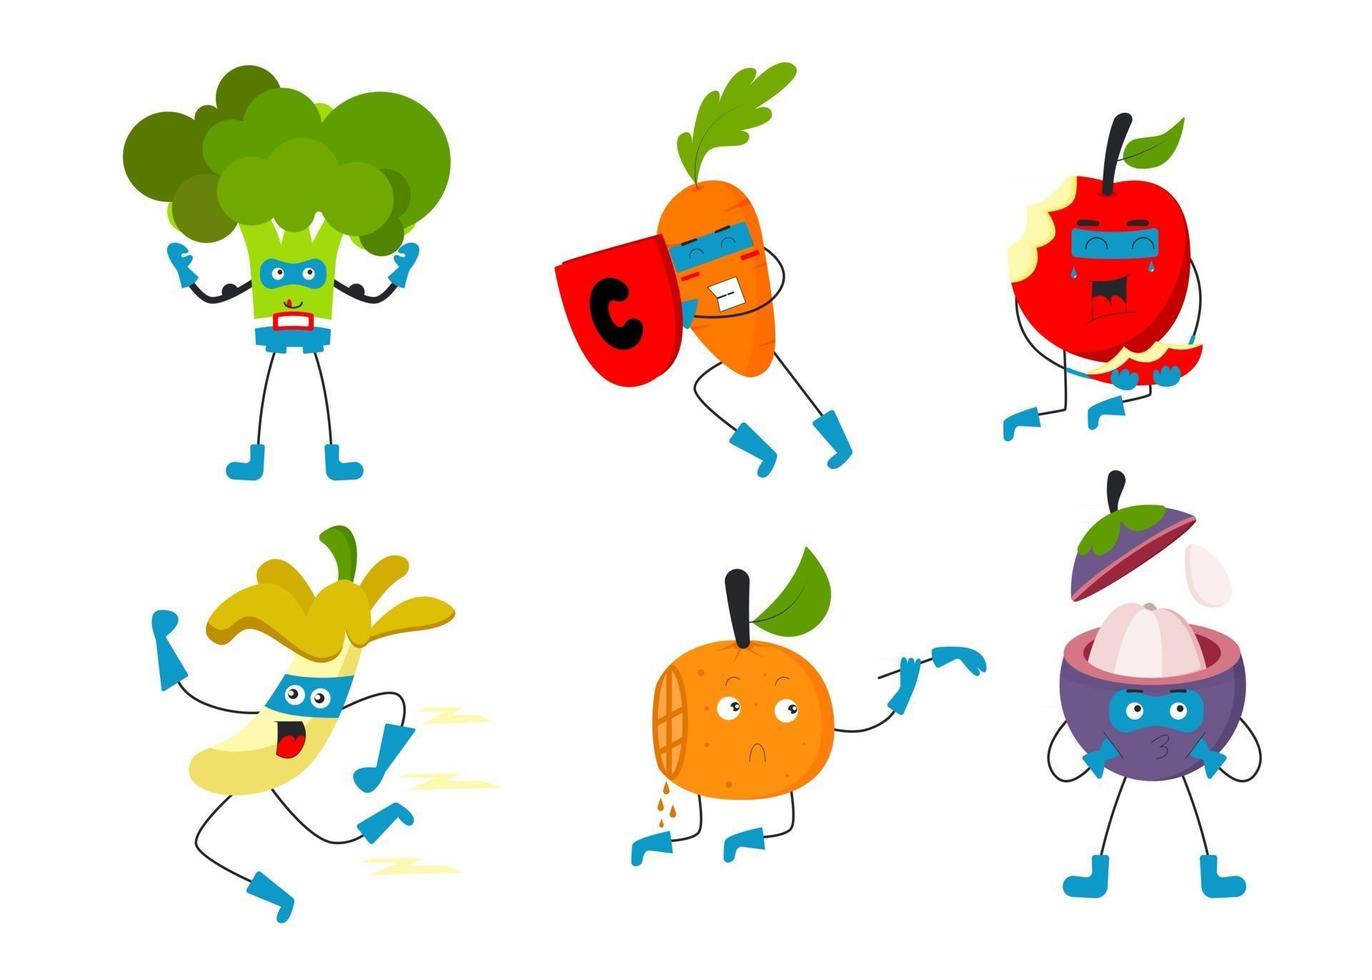 ensemble de fruits et légumes en vecteur plat de personnages de dessins animés